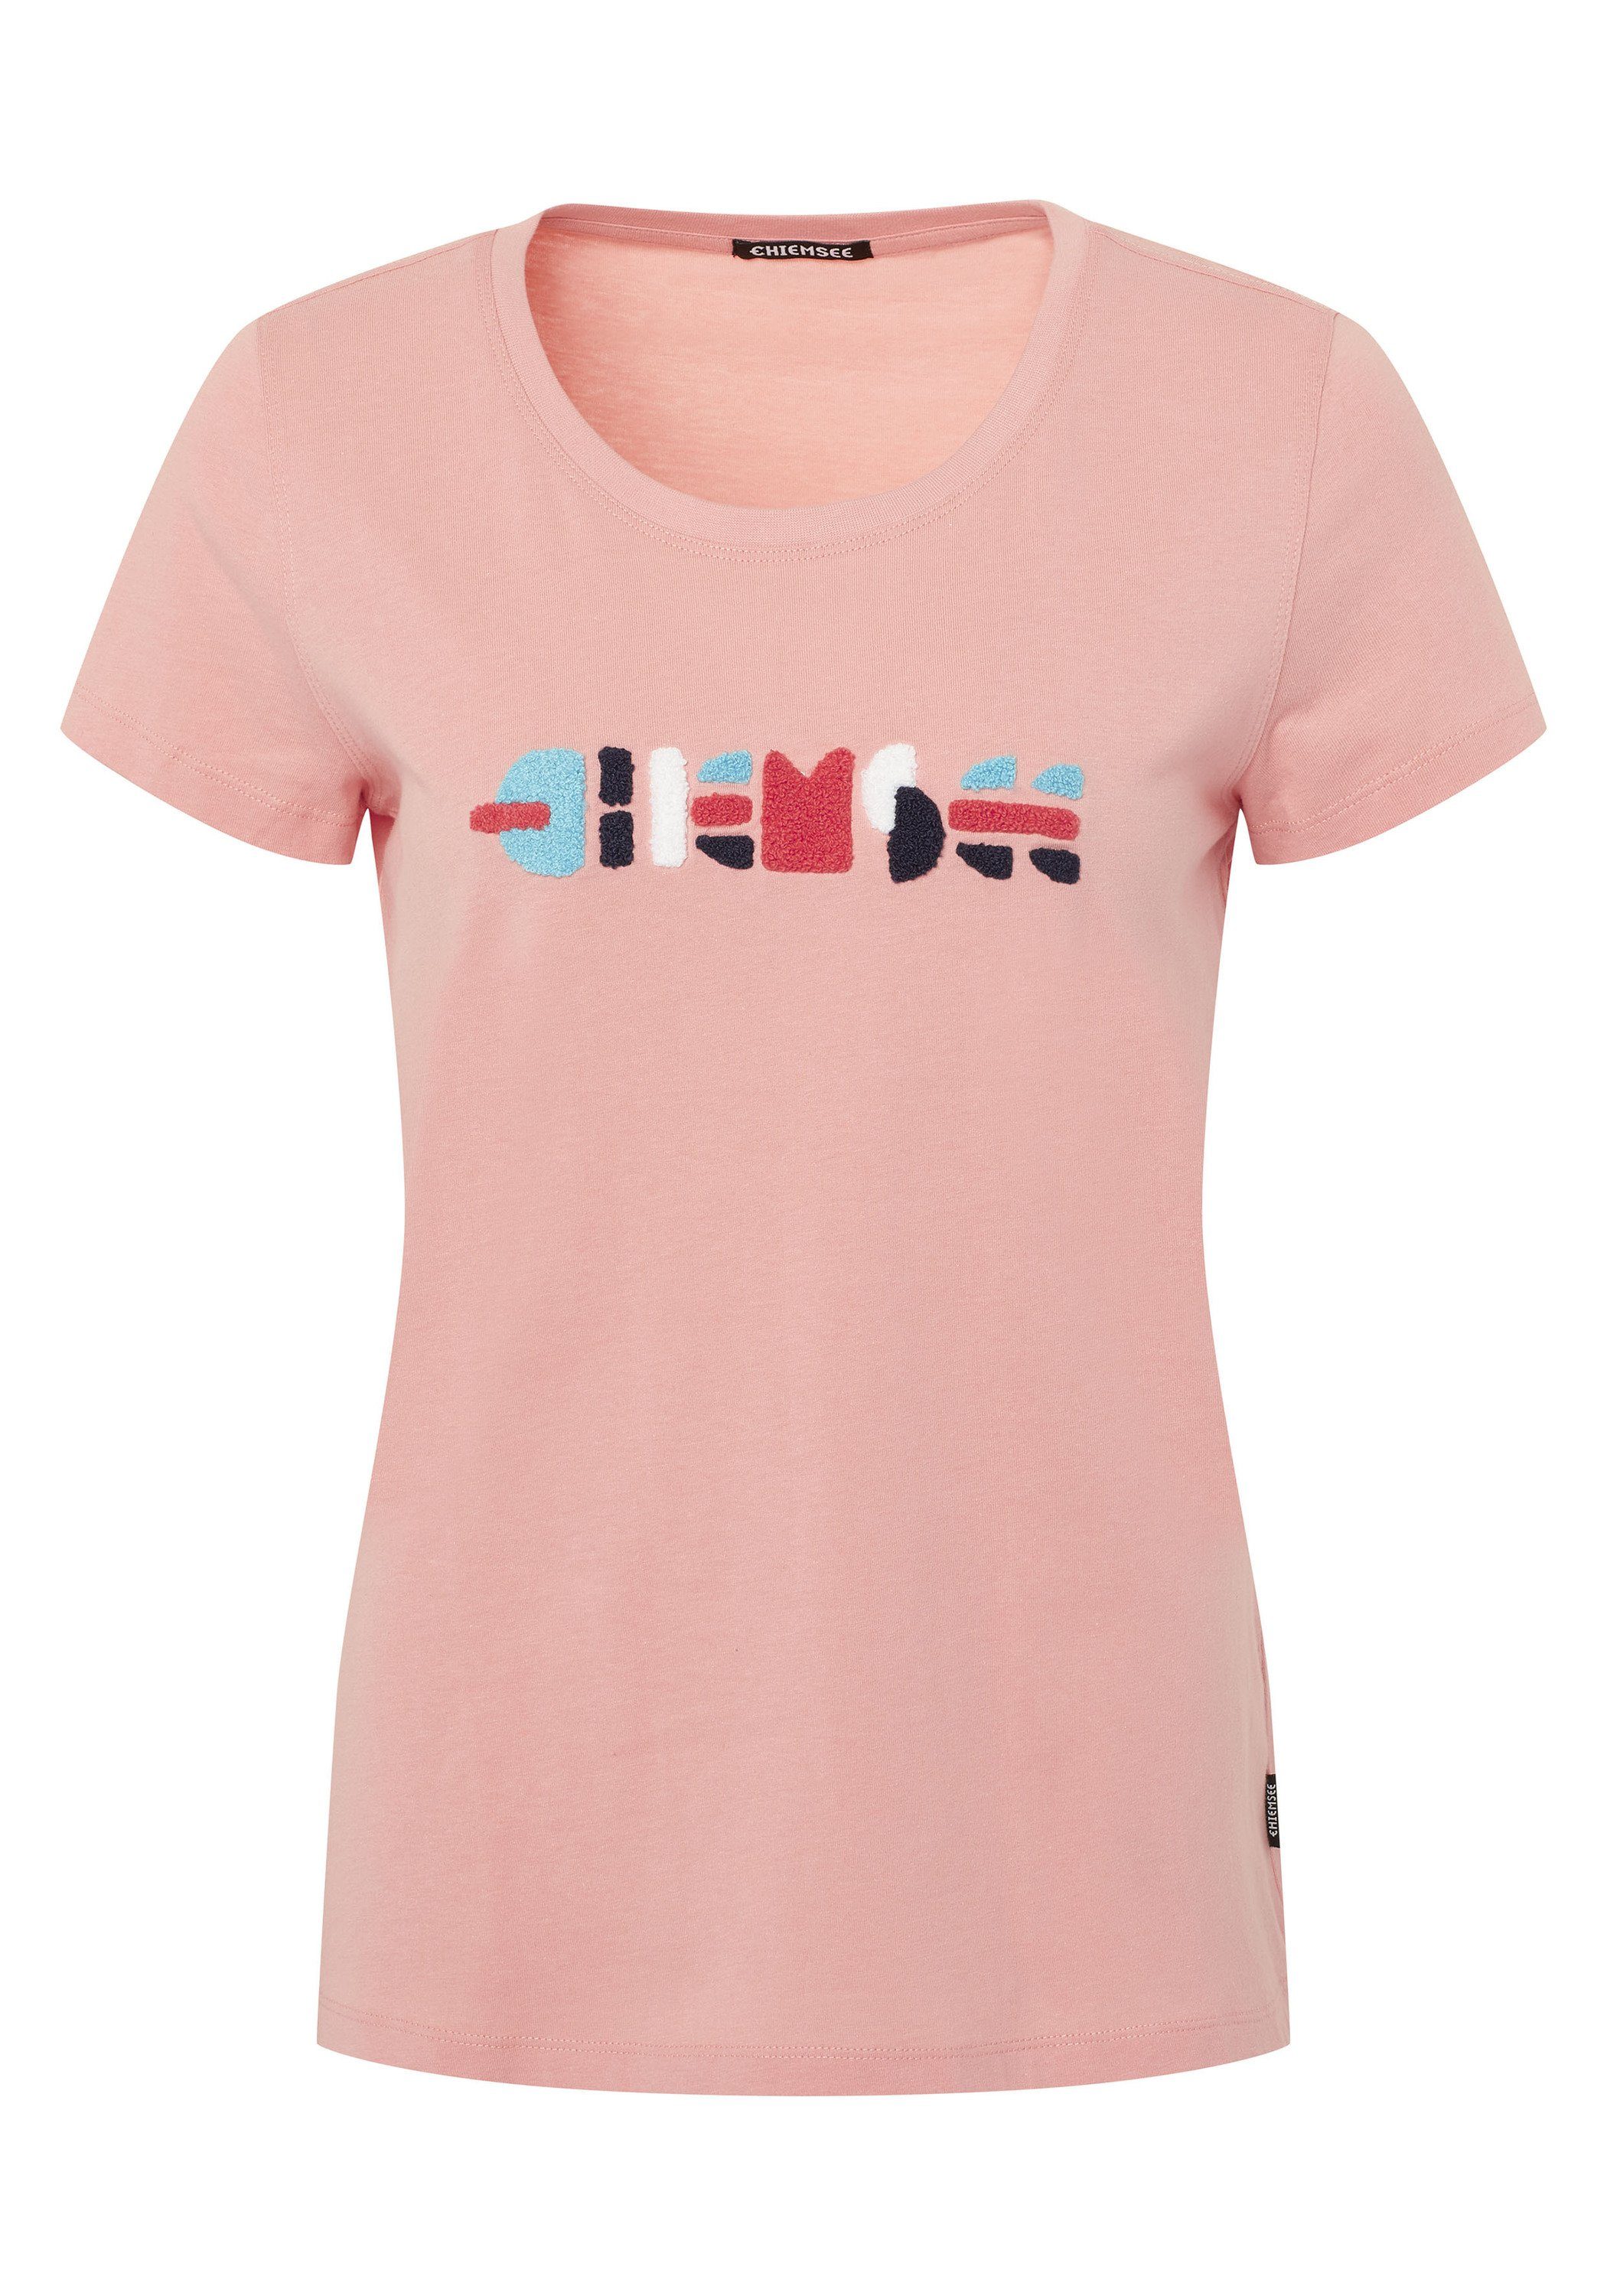 Chiemsee Print-Shirt T-Shirt mit flauschigem Multicolour-Logo 1 14-1521 Peaches N' Cream